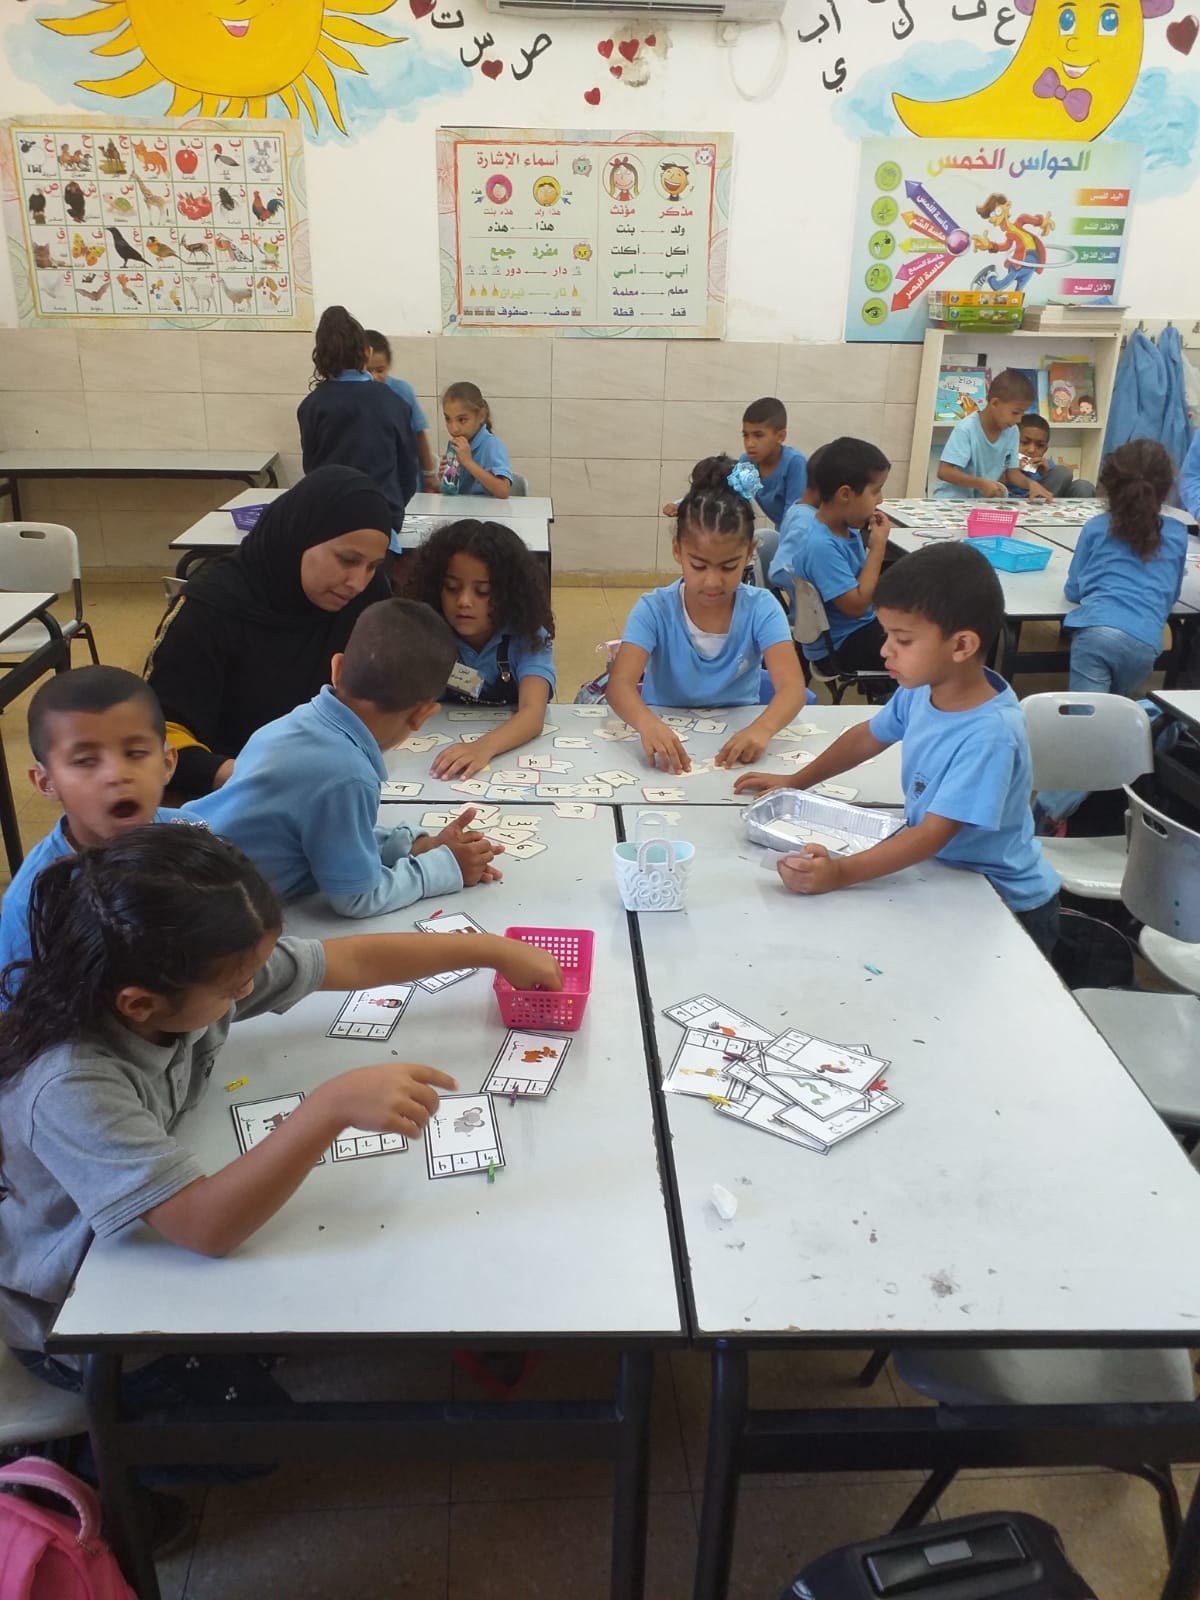  اللد: مدرسة الزهراء تحتفل باللغة العربية بعنوان “في خيمة الحروف